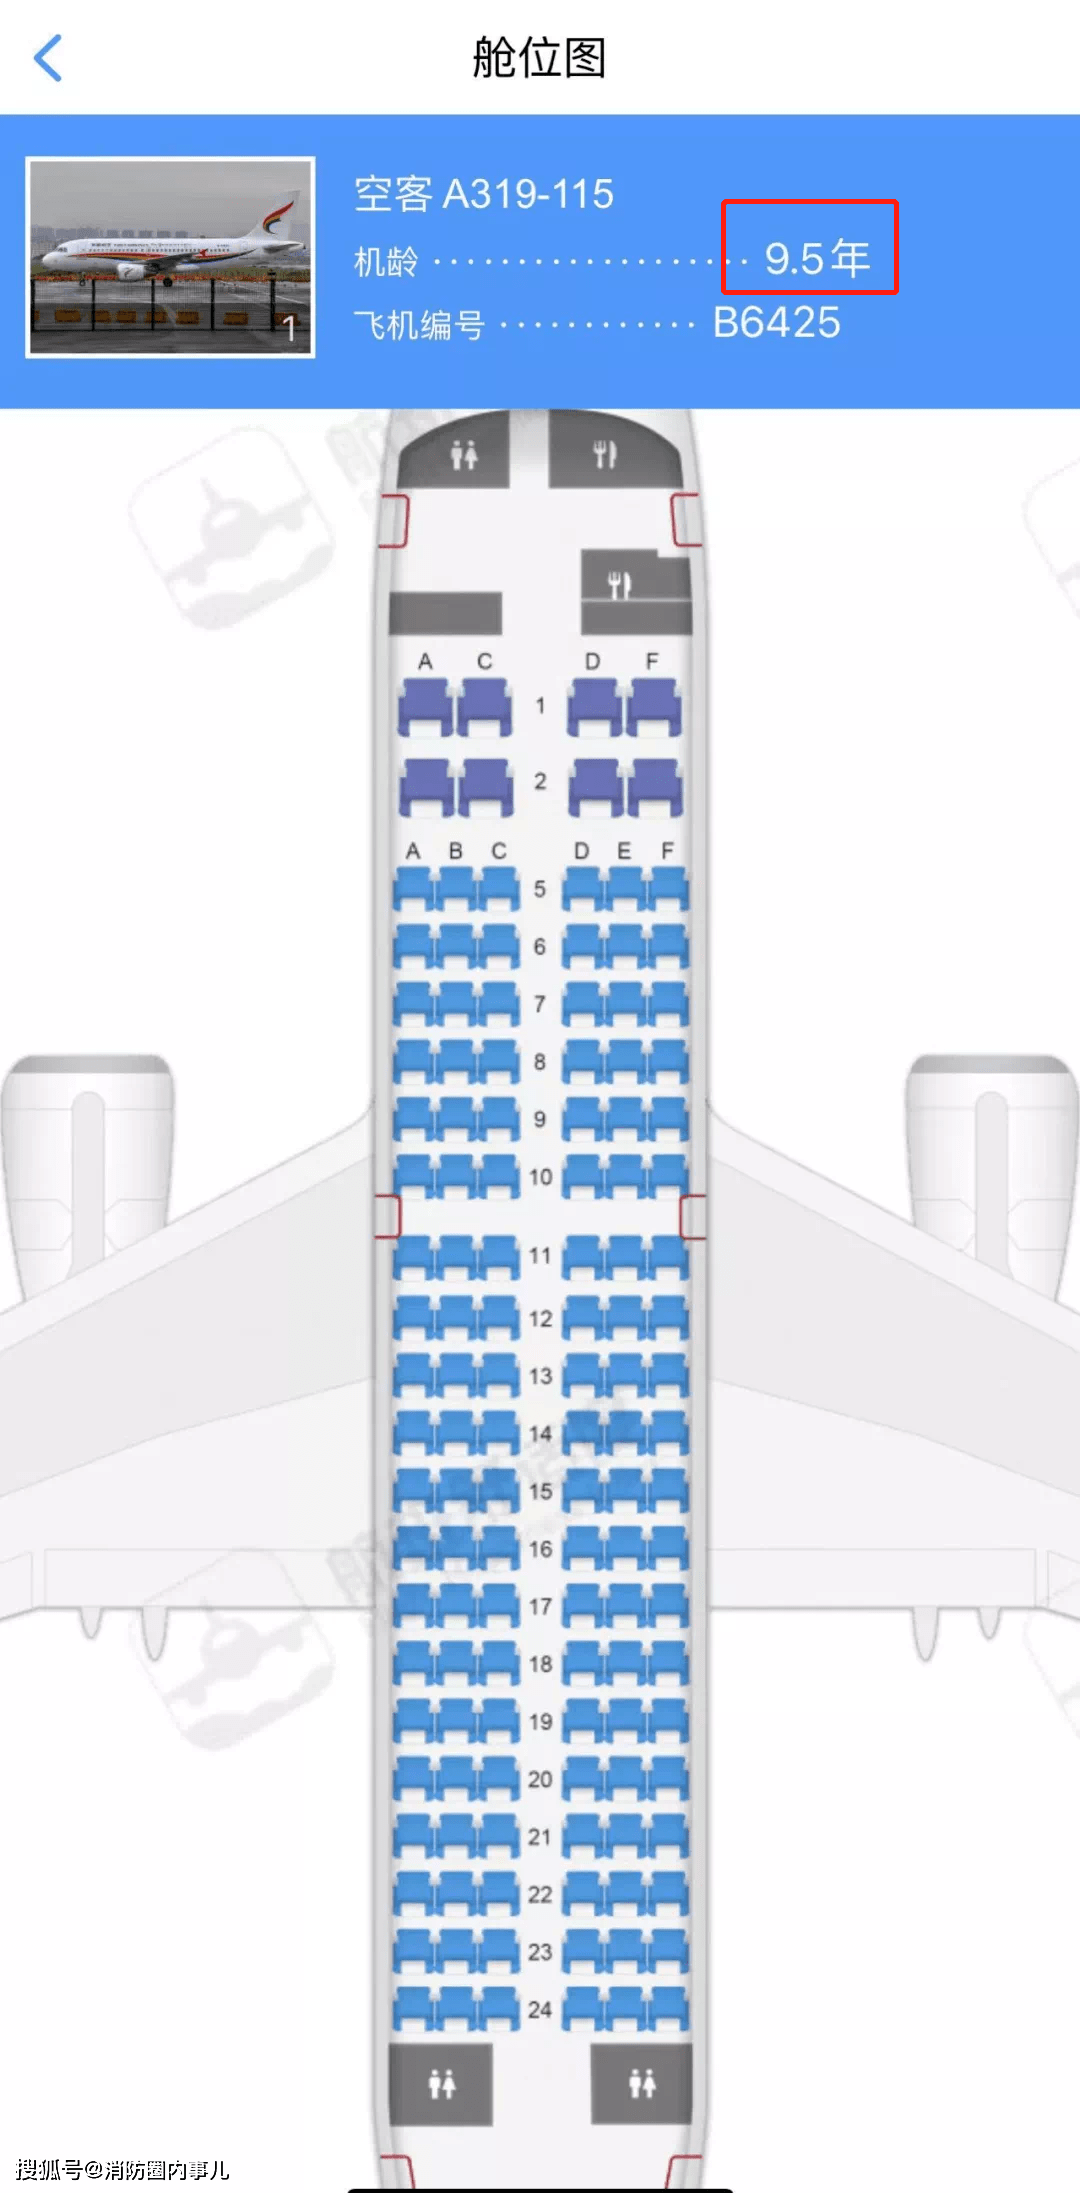 长龙320机型座位图图片